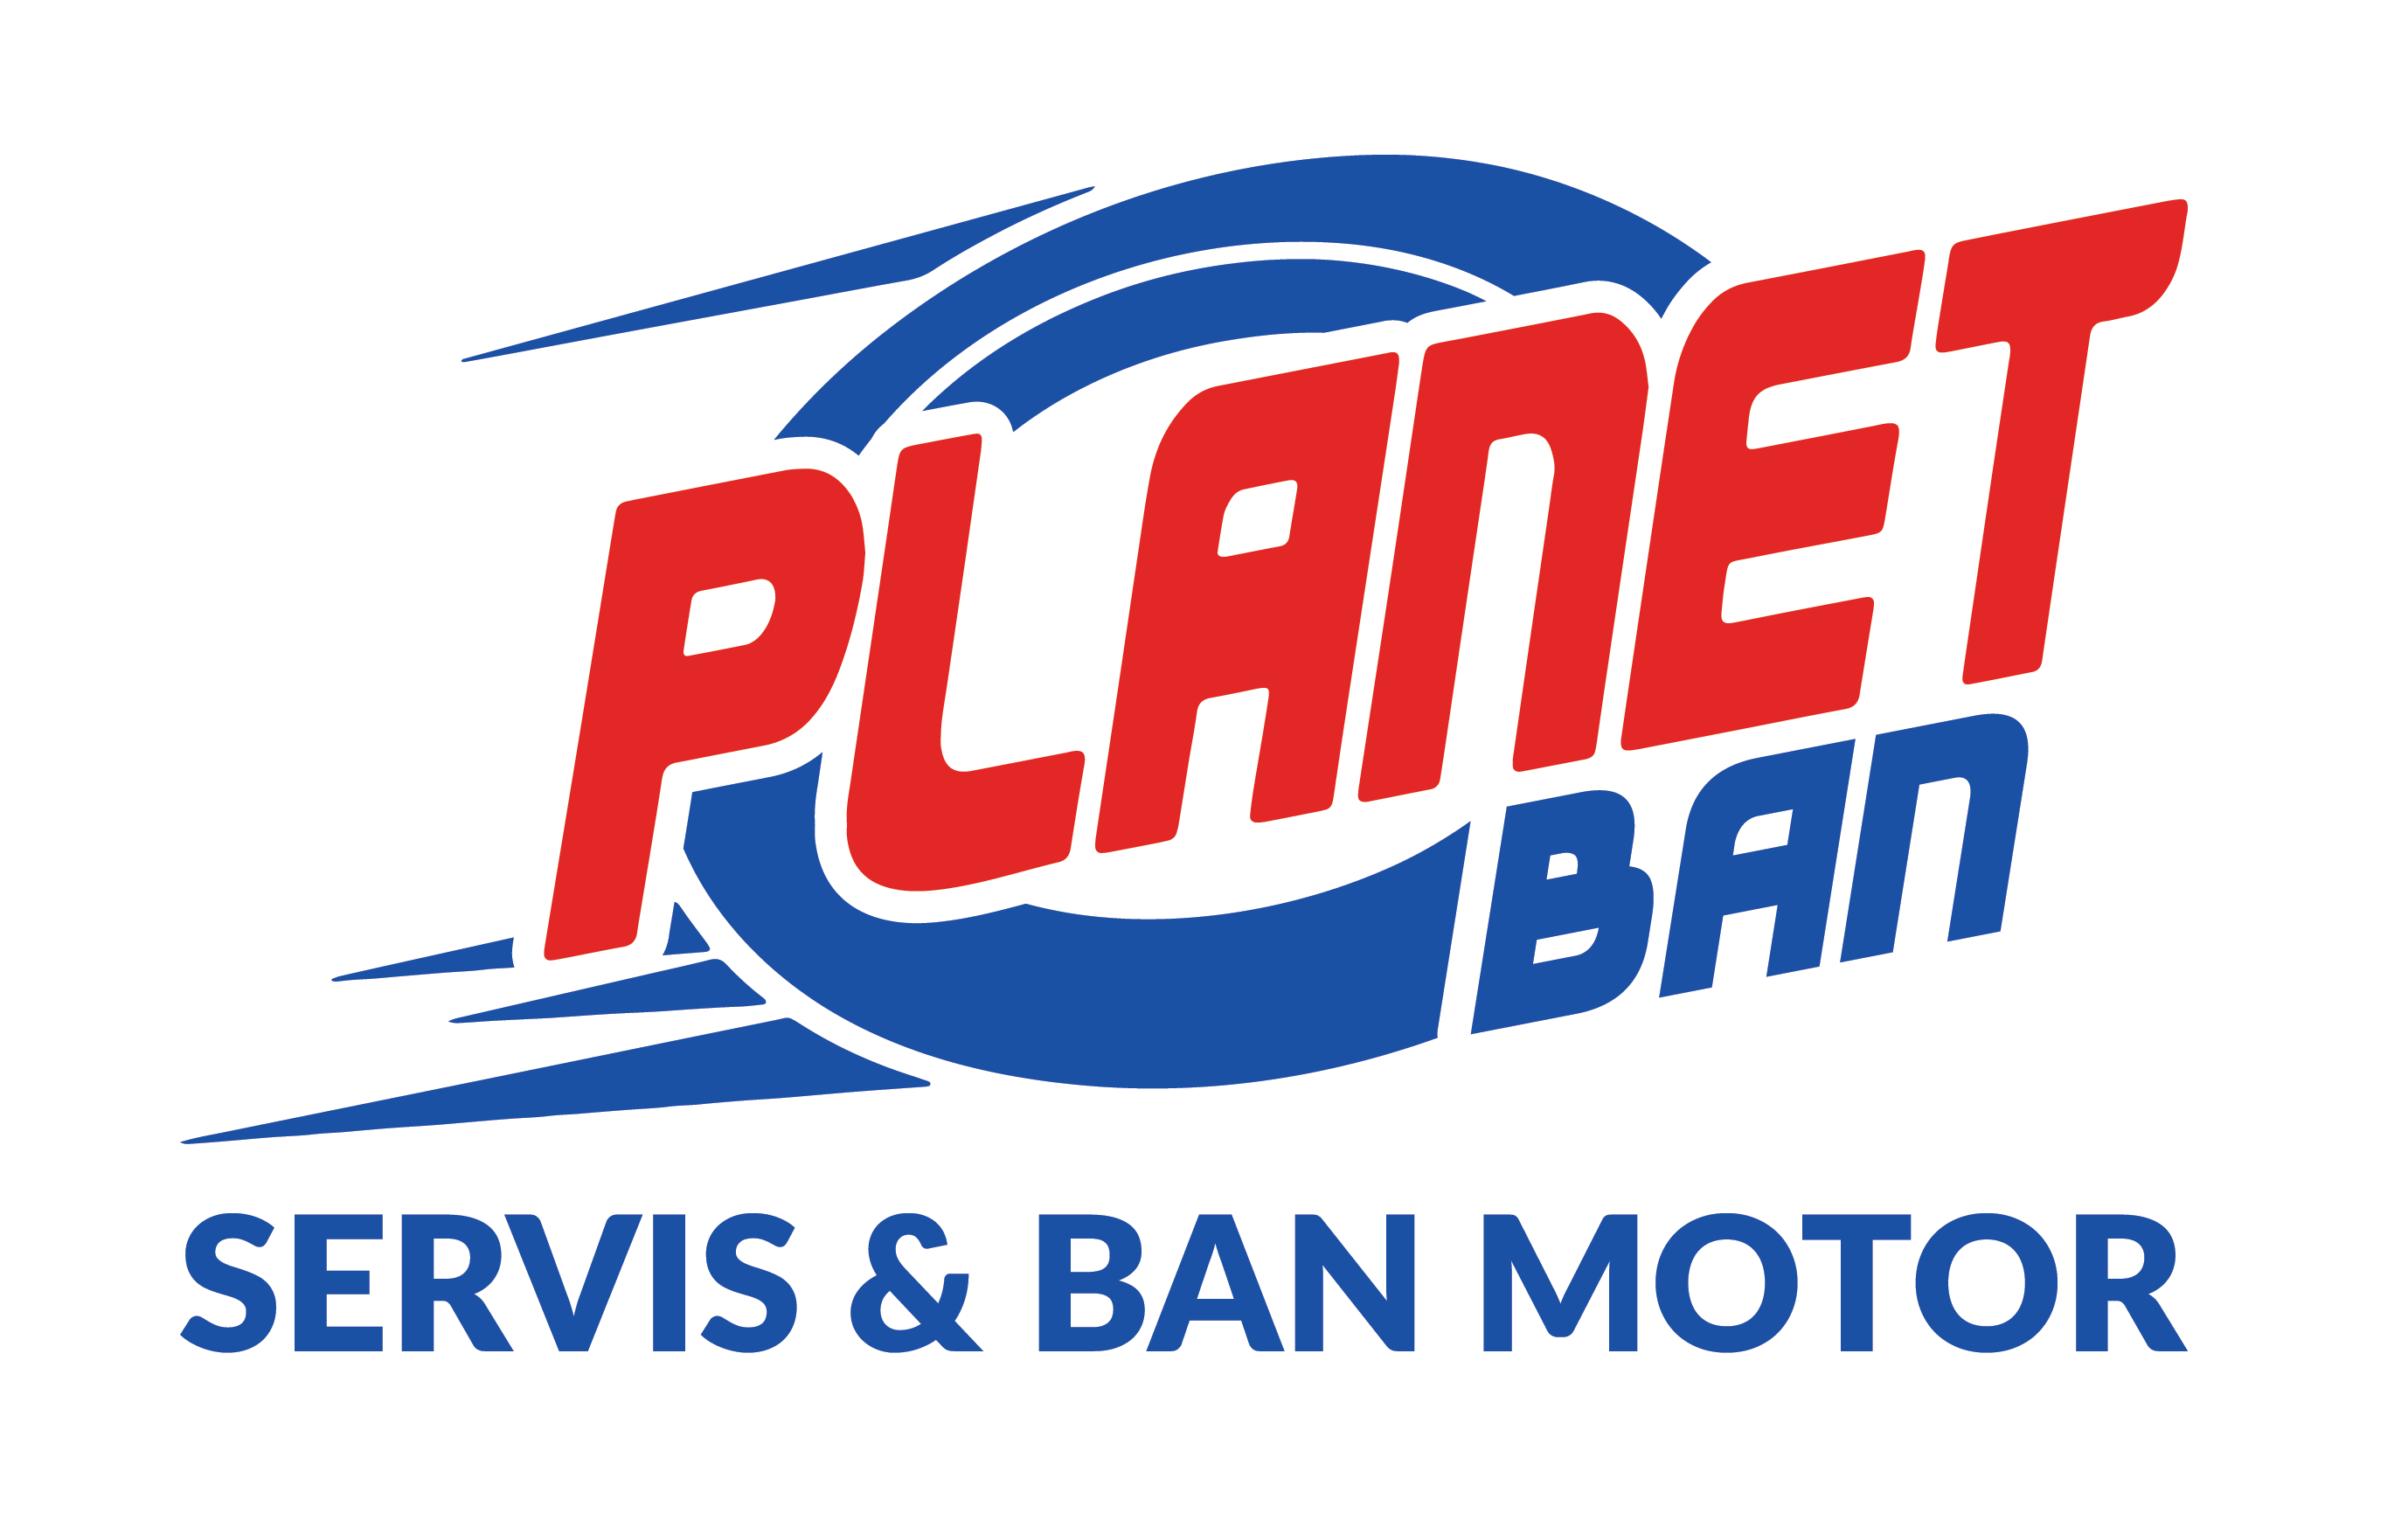 Planet Ban